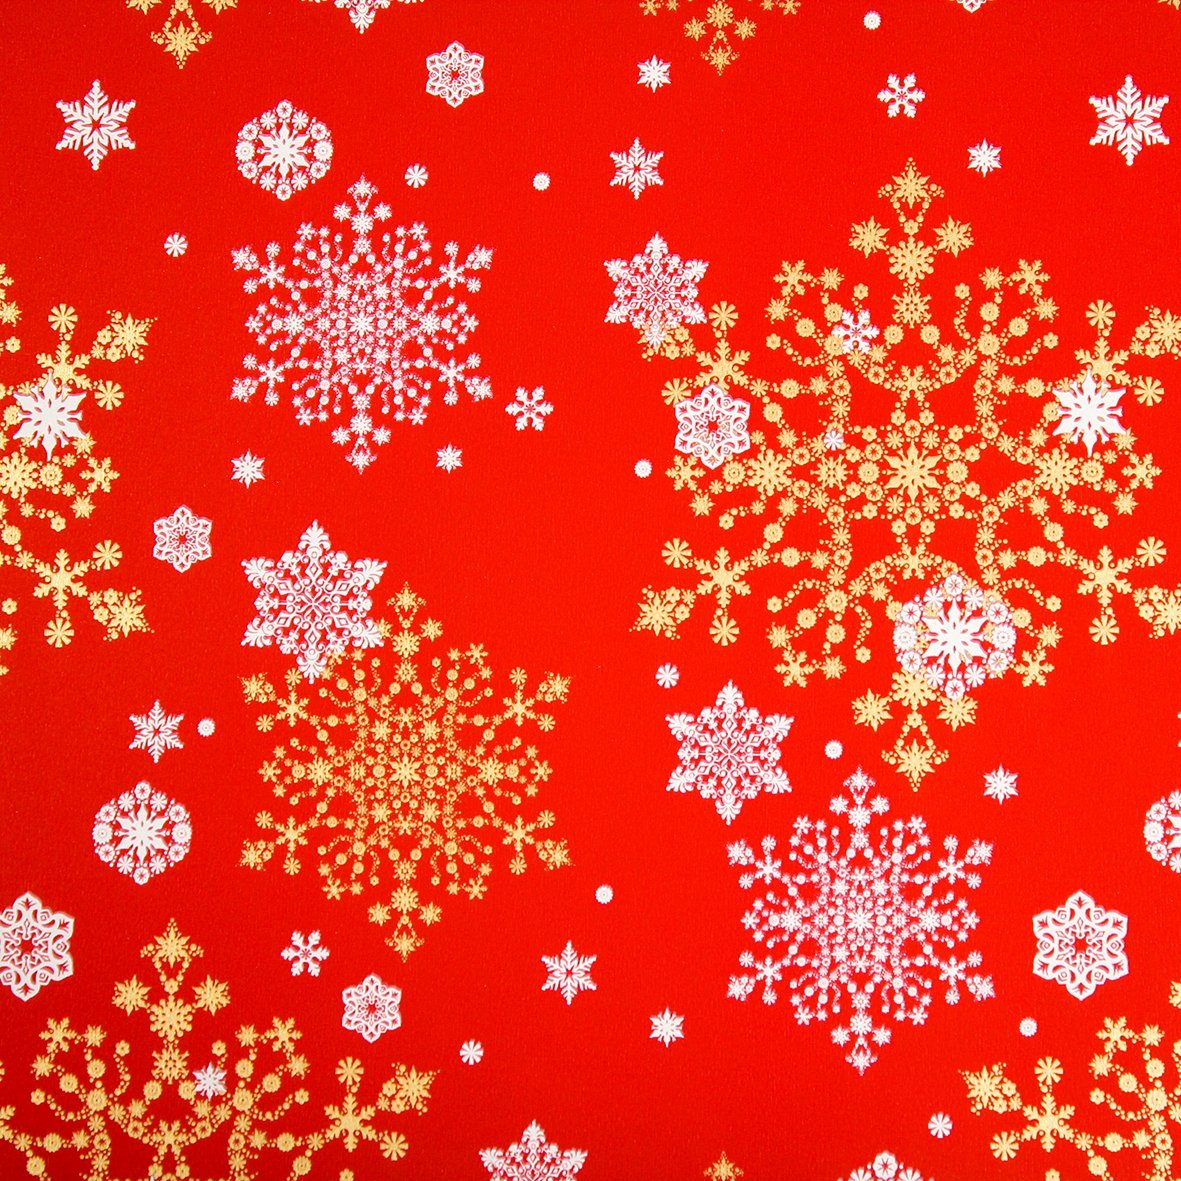 Star Geschenkpapier, Geschenkpapier Schneeflocken Muster 70cm x 2m Rolle rot / weiß / gold